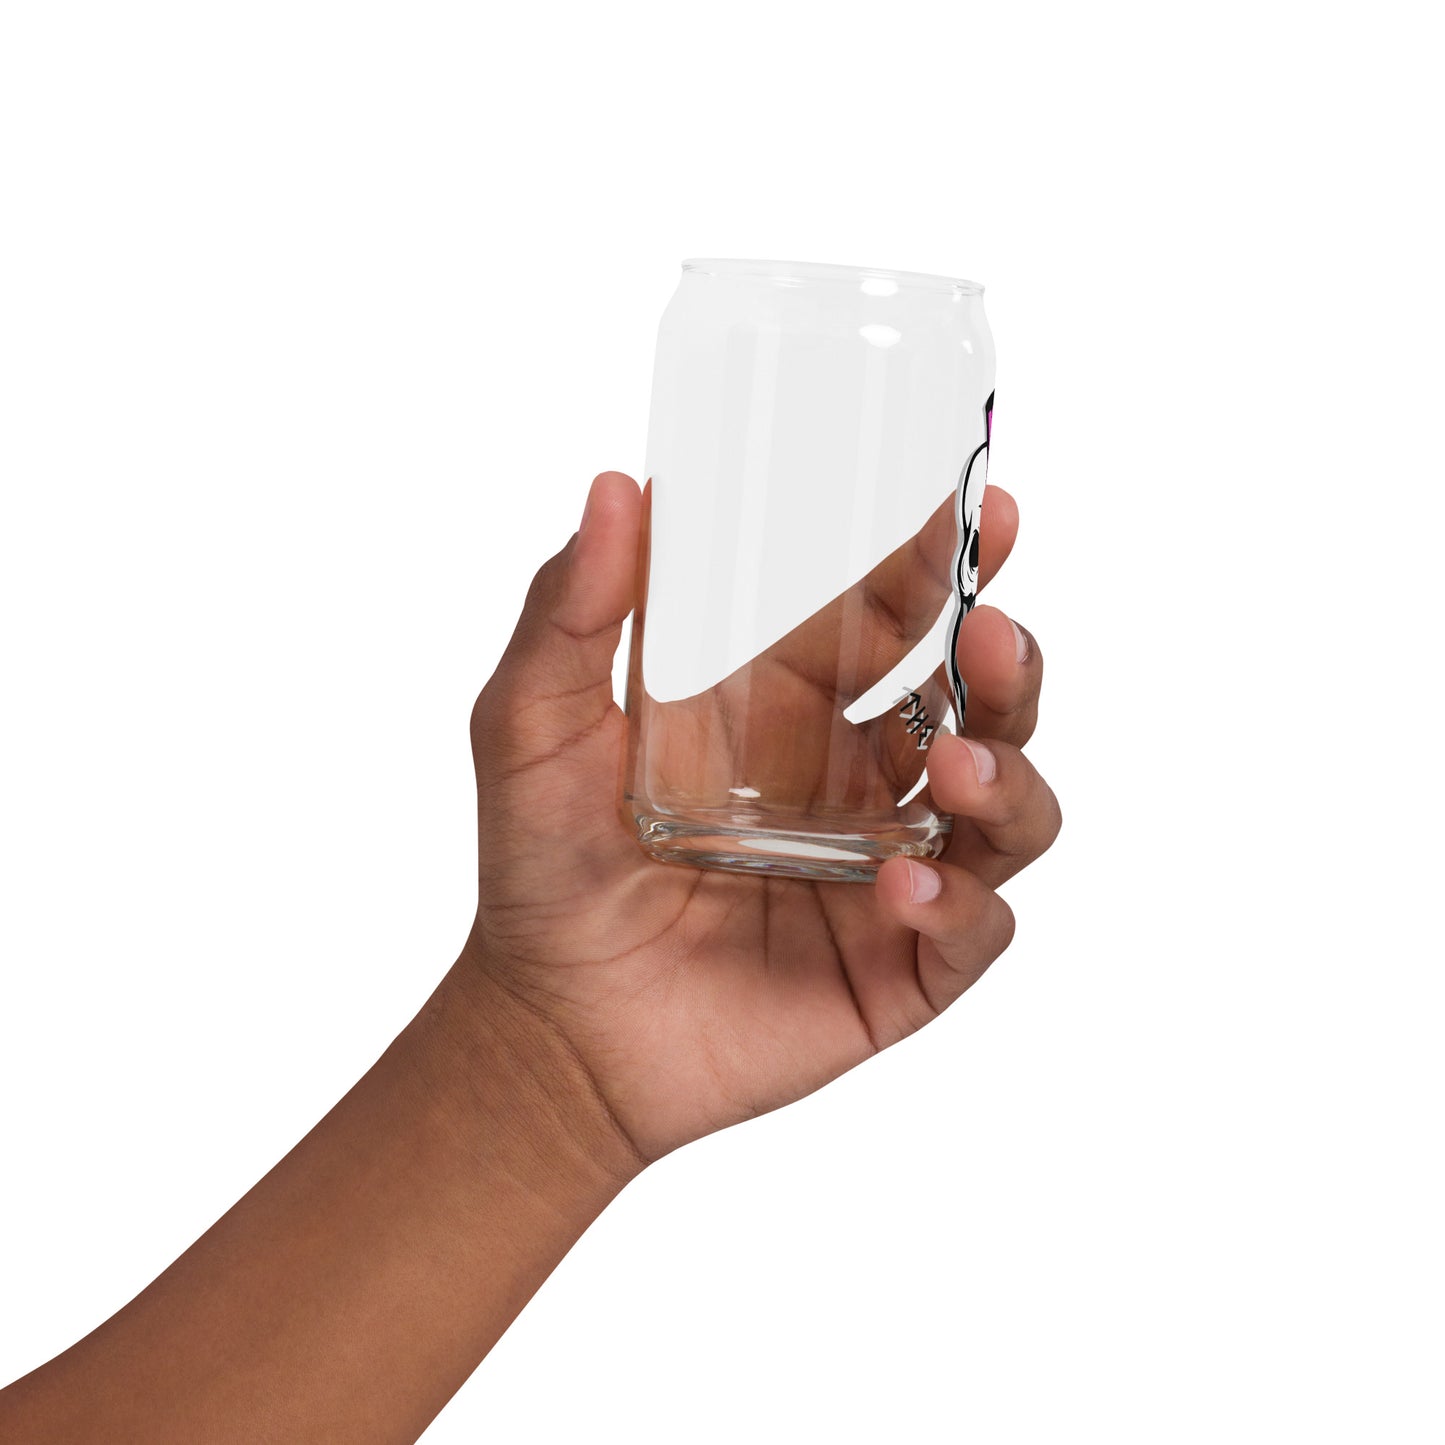 OG Logo Can-shaped glass